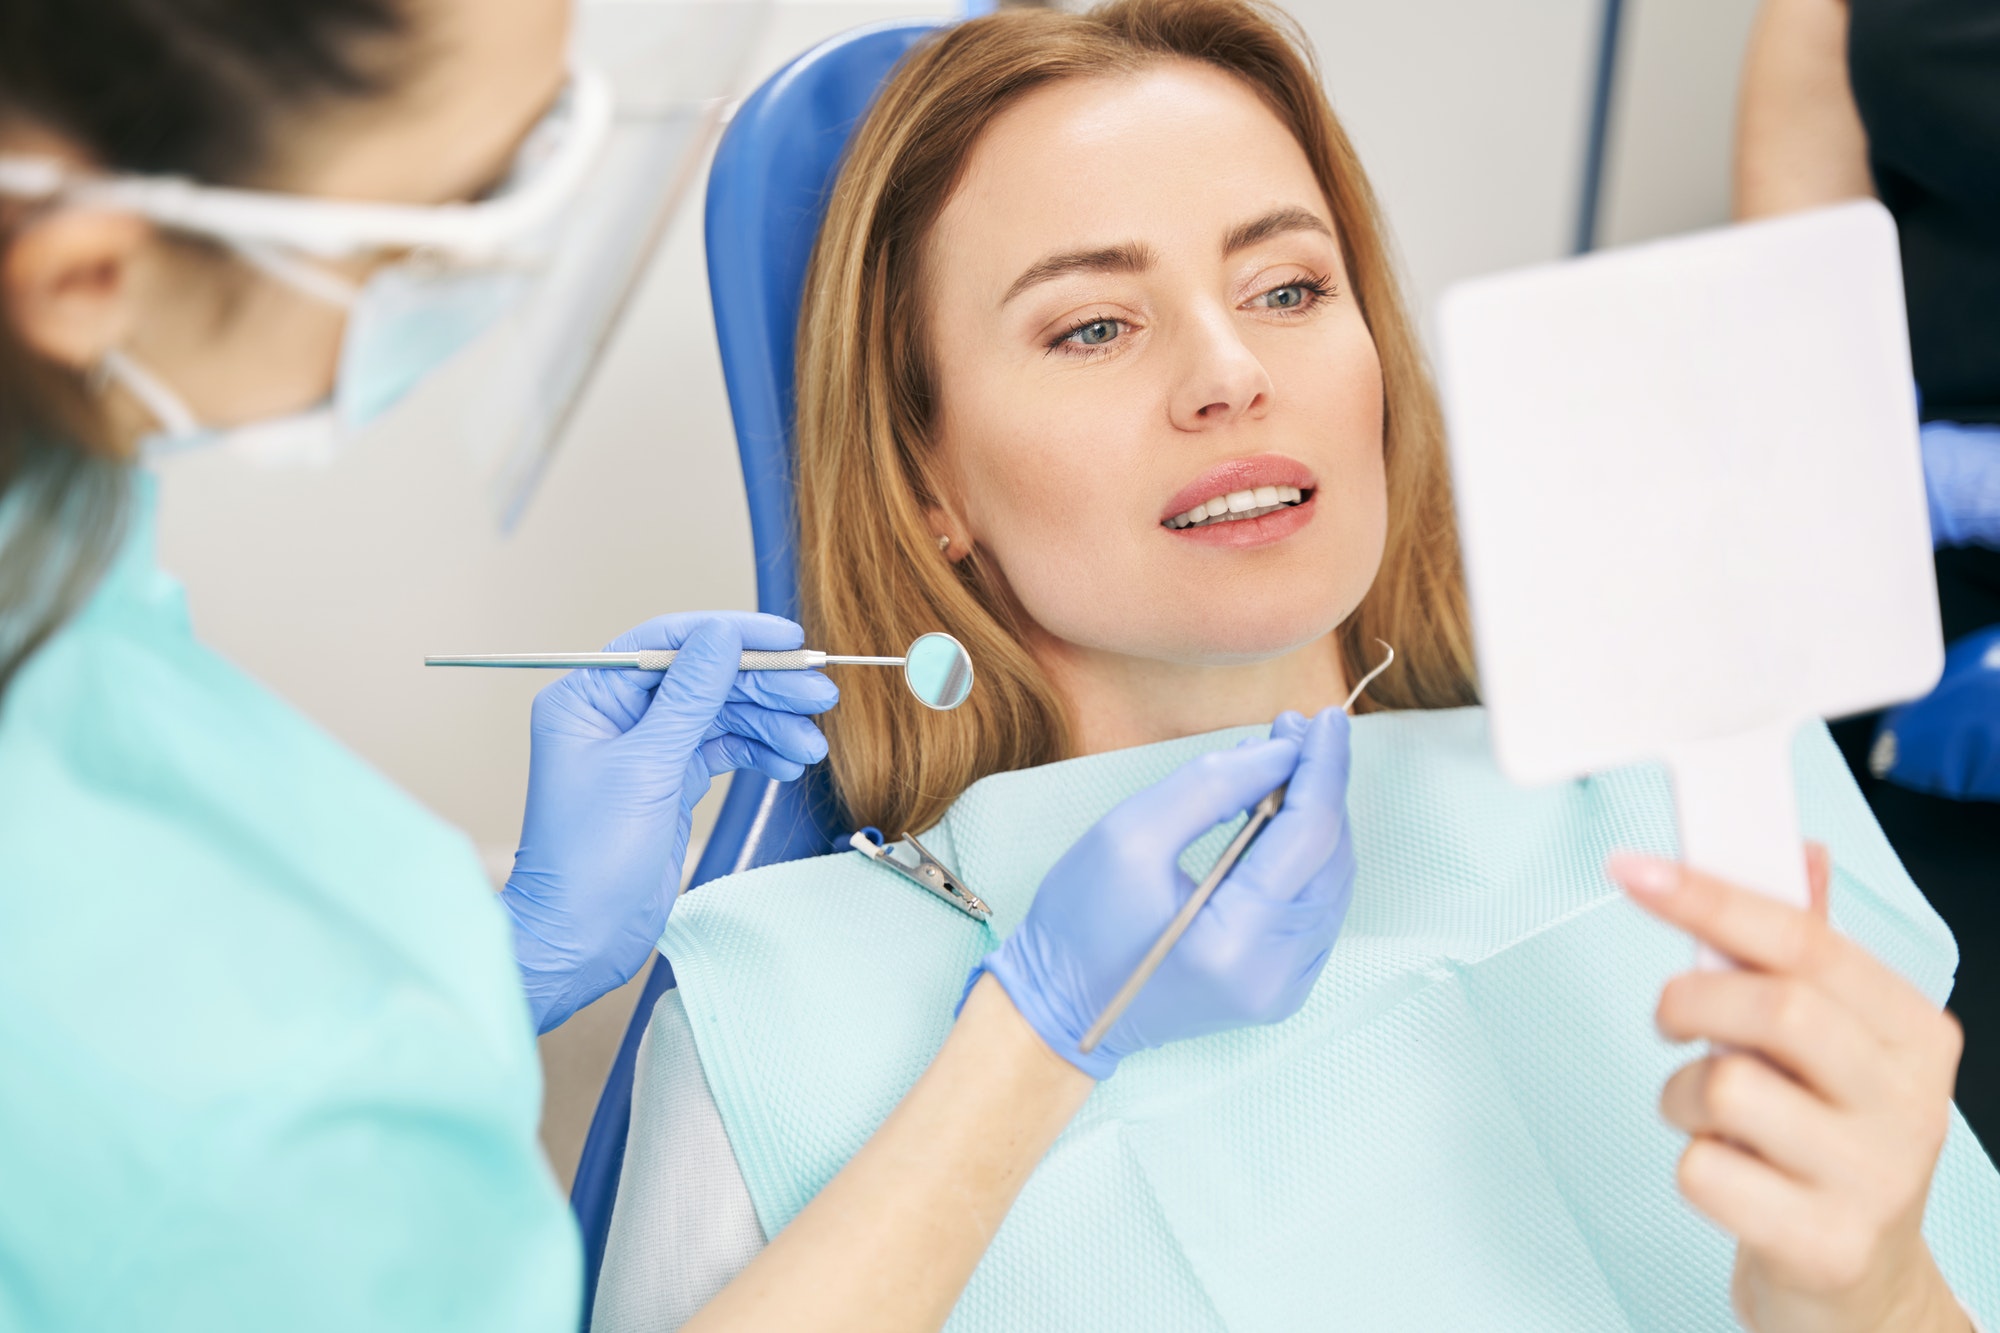 Woman having dental examination in stomatology clinic